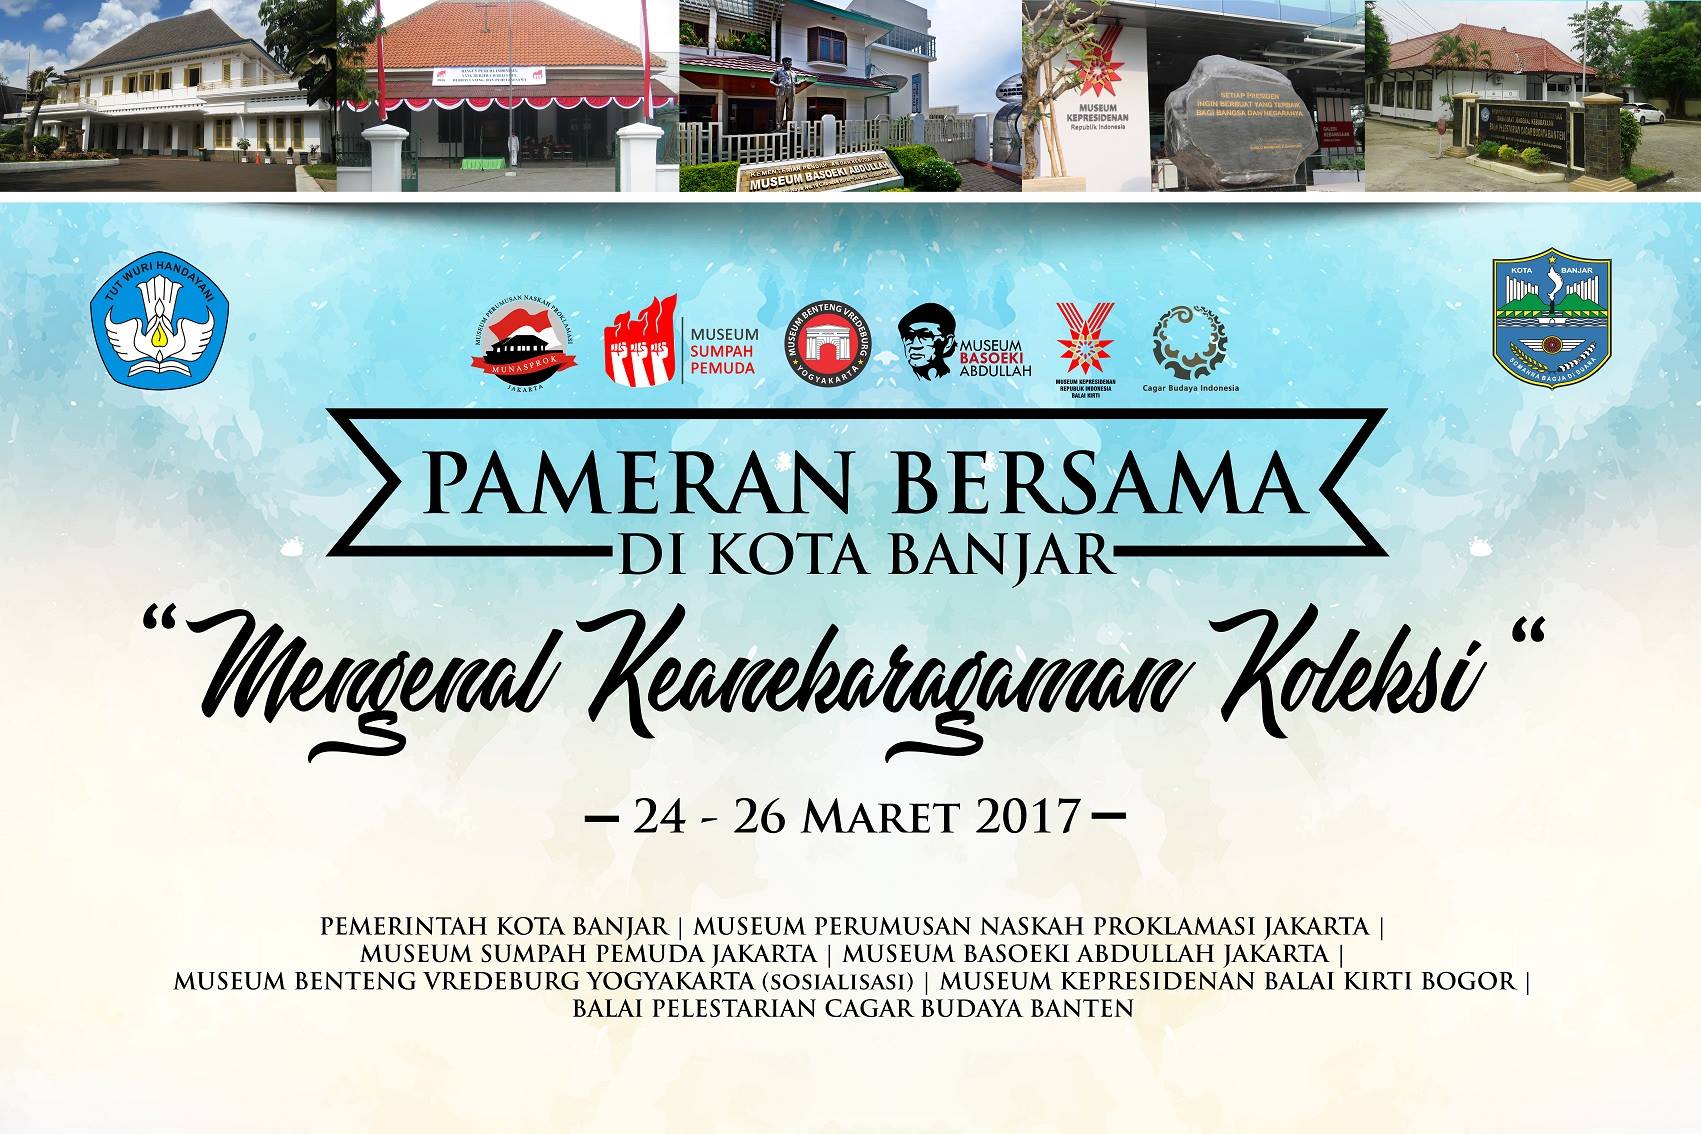 You are currently viewing Pembukaan Pameran Bersama di Kota Banjar “Mengenal Keanekaragaman Koleksi”